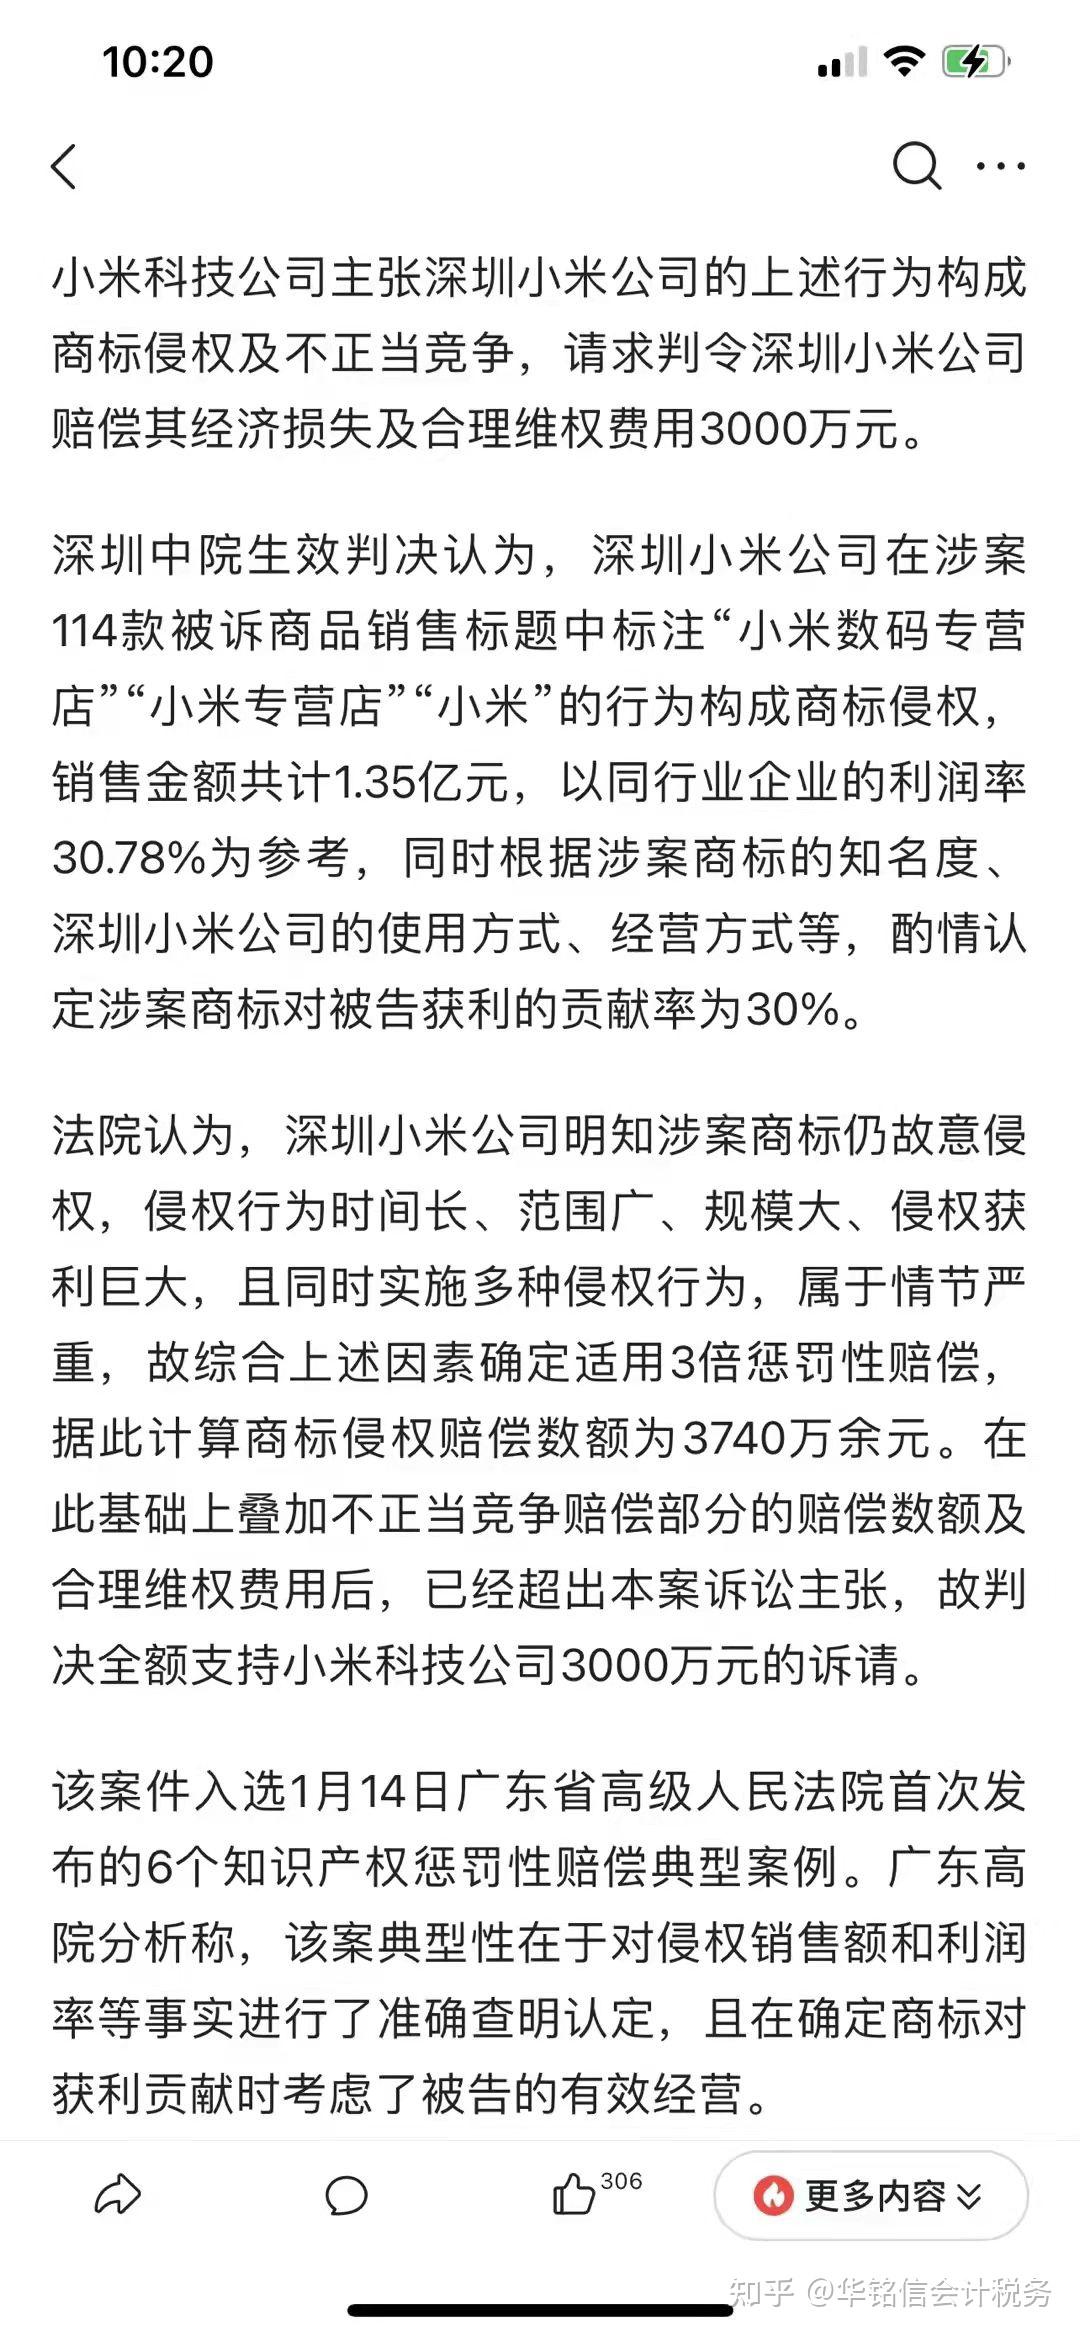 中国两大科技巨头互掐 华为提告小米专利侵权 - 全球新闻流 - 六度世界